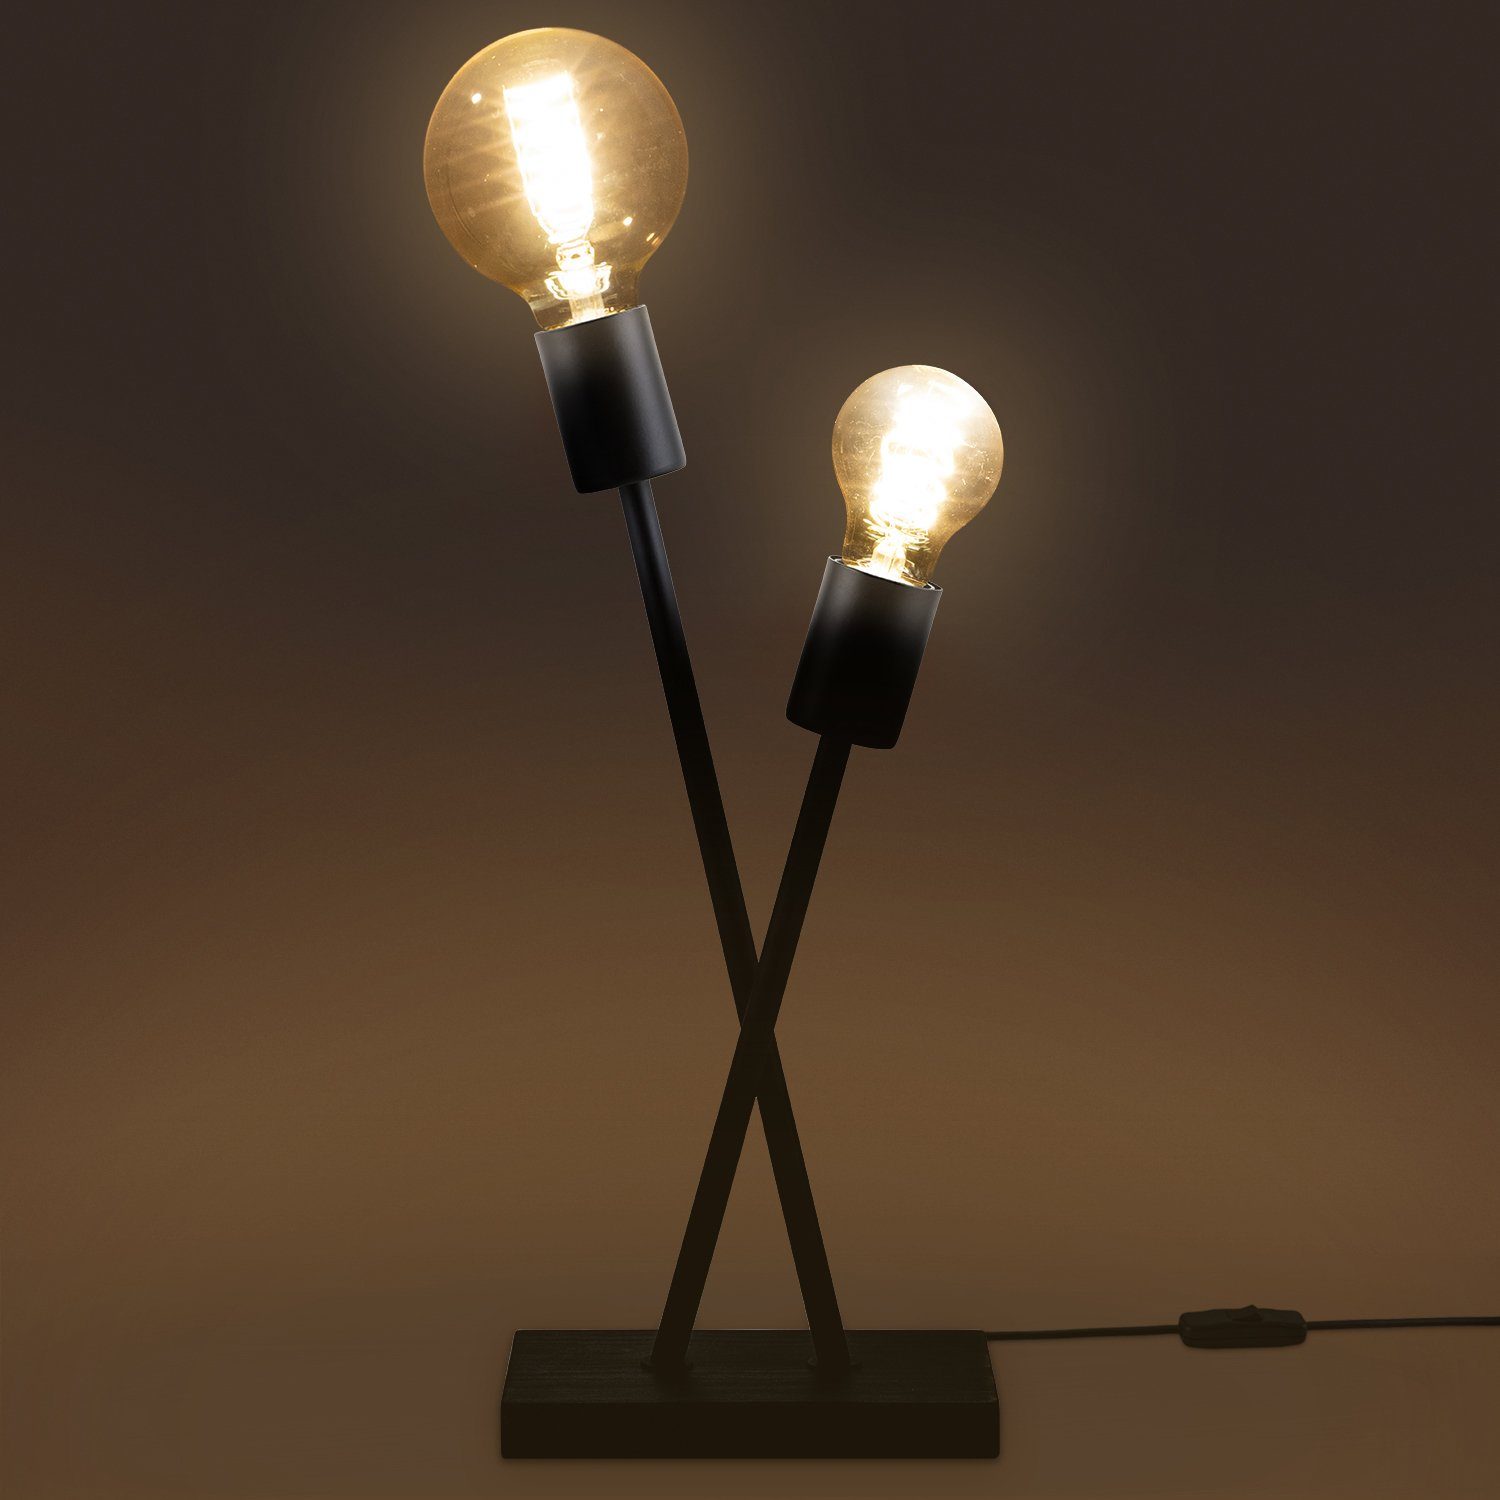 Home Lampe Paco Retro Industrial IKS, Stehlampe Leuchtmittel, LED Design Vintage ohne Wohnzimmer E27 Tischleuchte